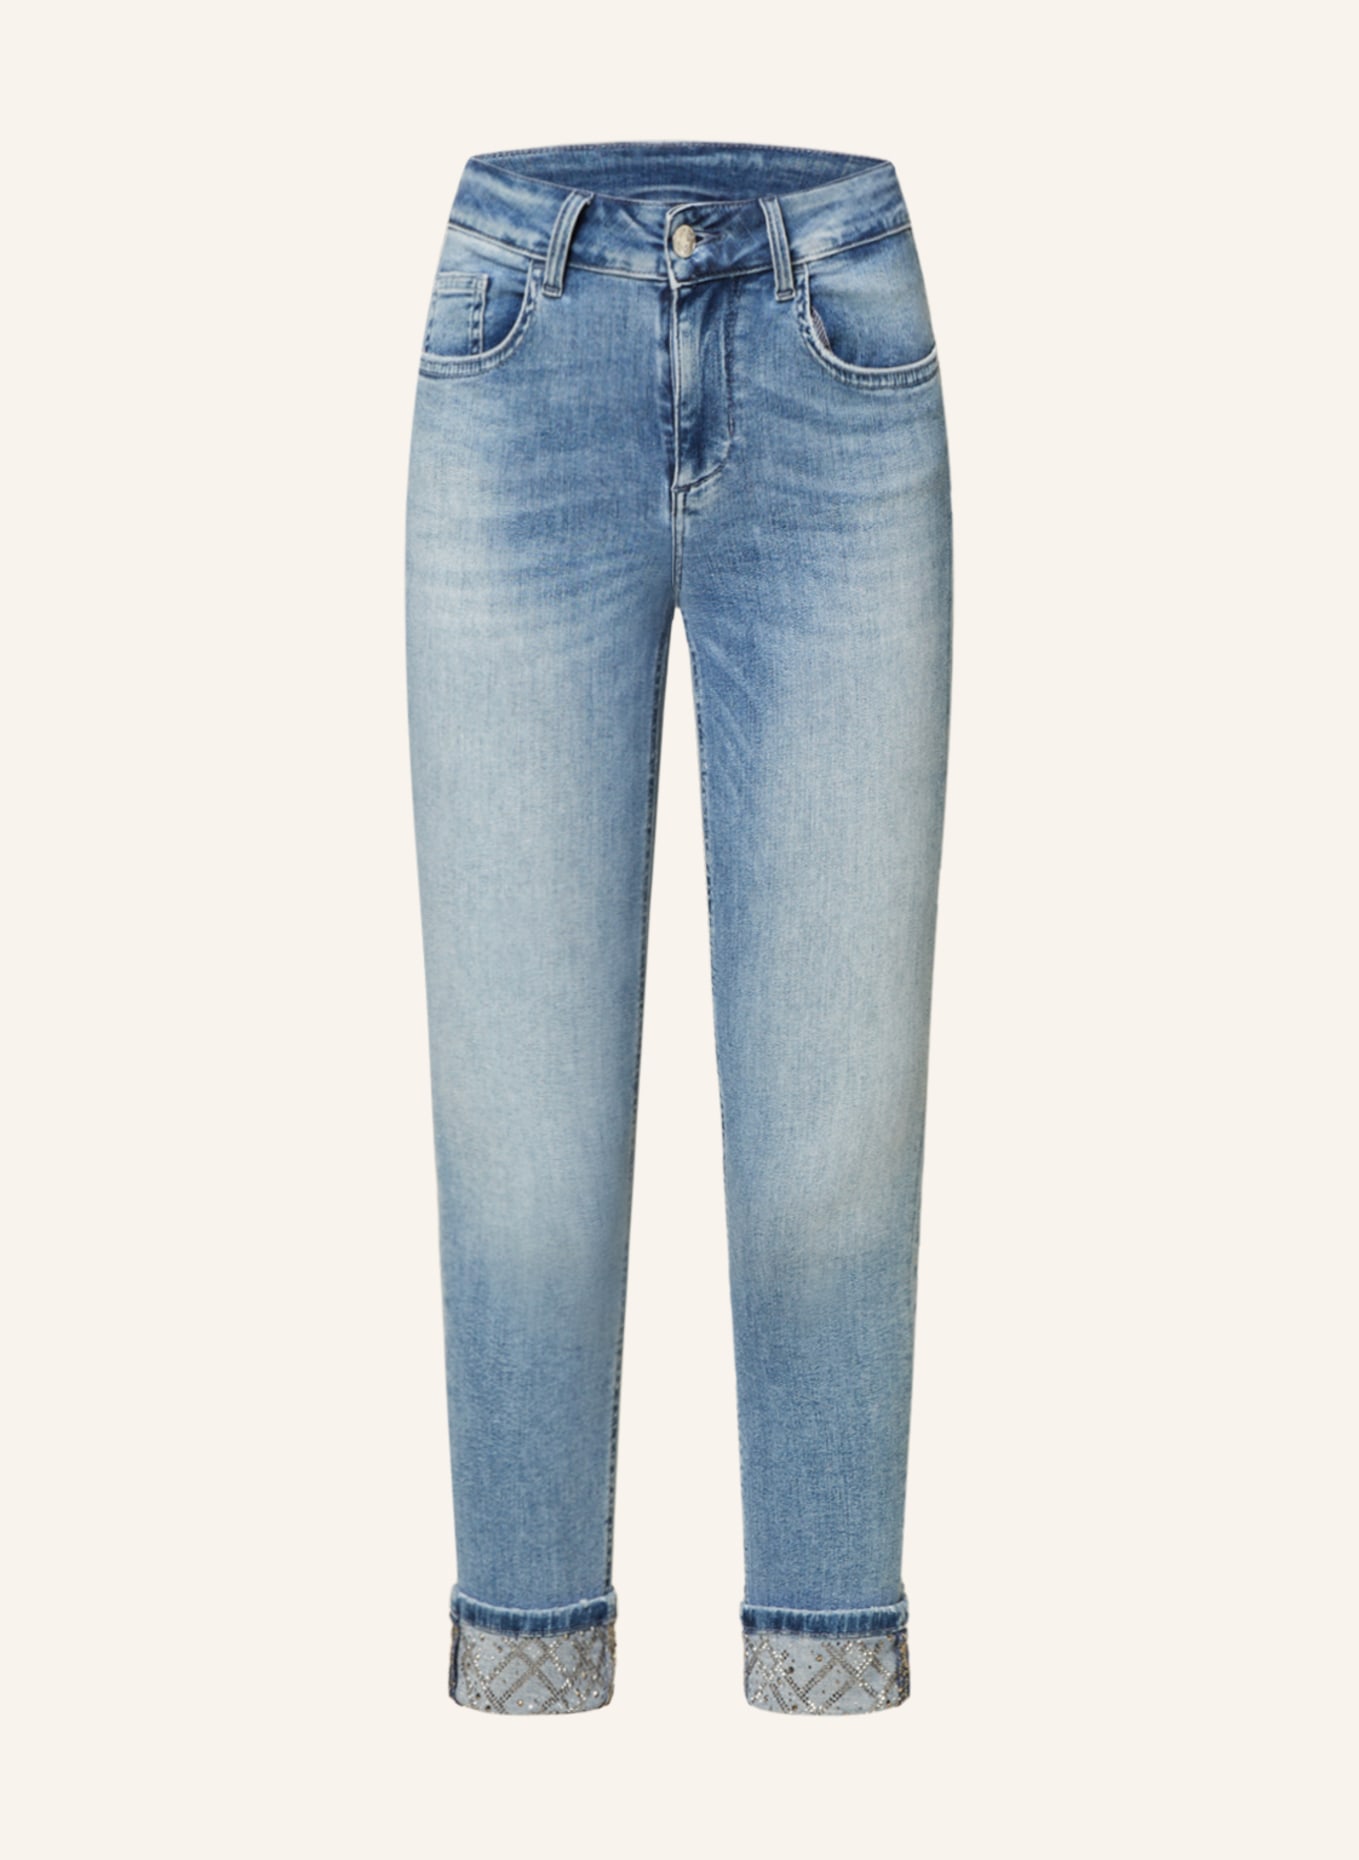 LIU JO 7/8-Jeans mit Schmucksteinen, Farbe: 78691 Den.Blue lt summer w (Bild 1)